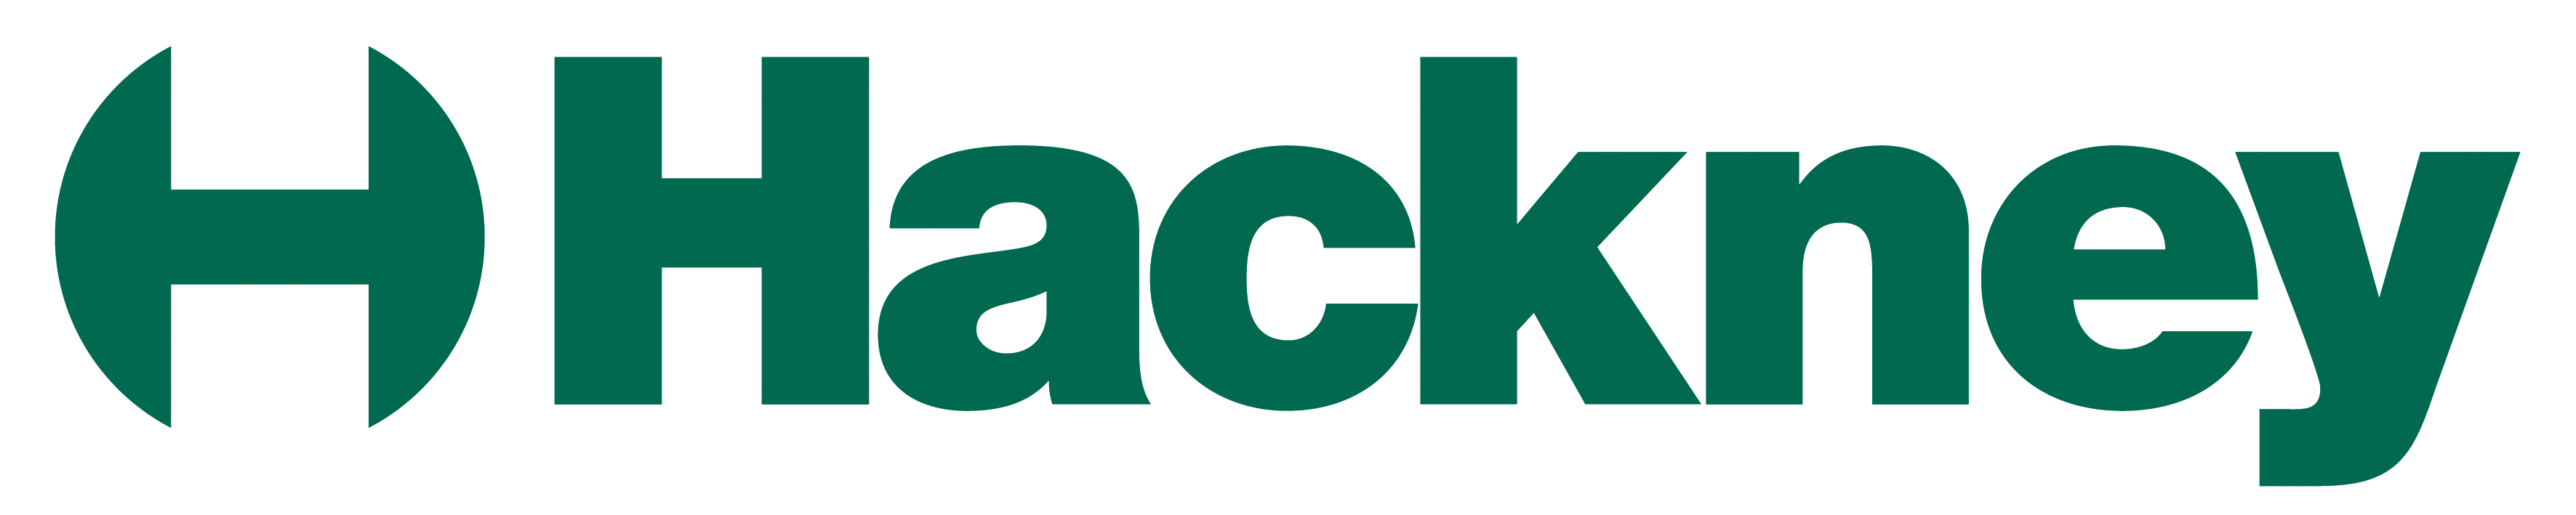 Hackney-Council-logo